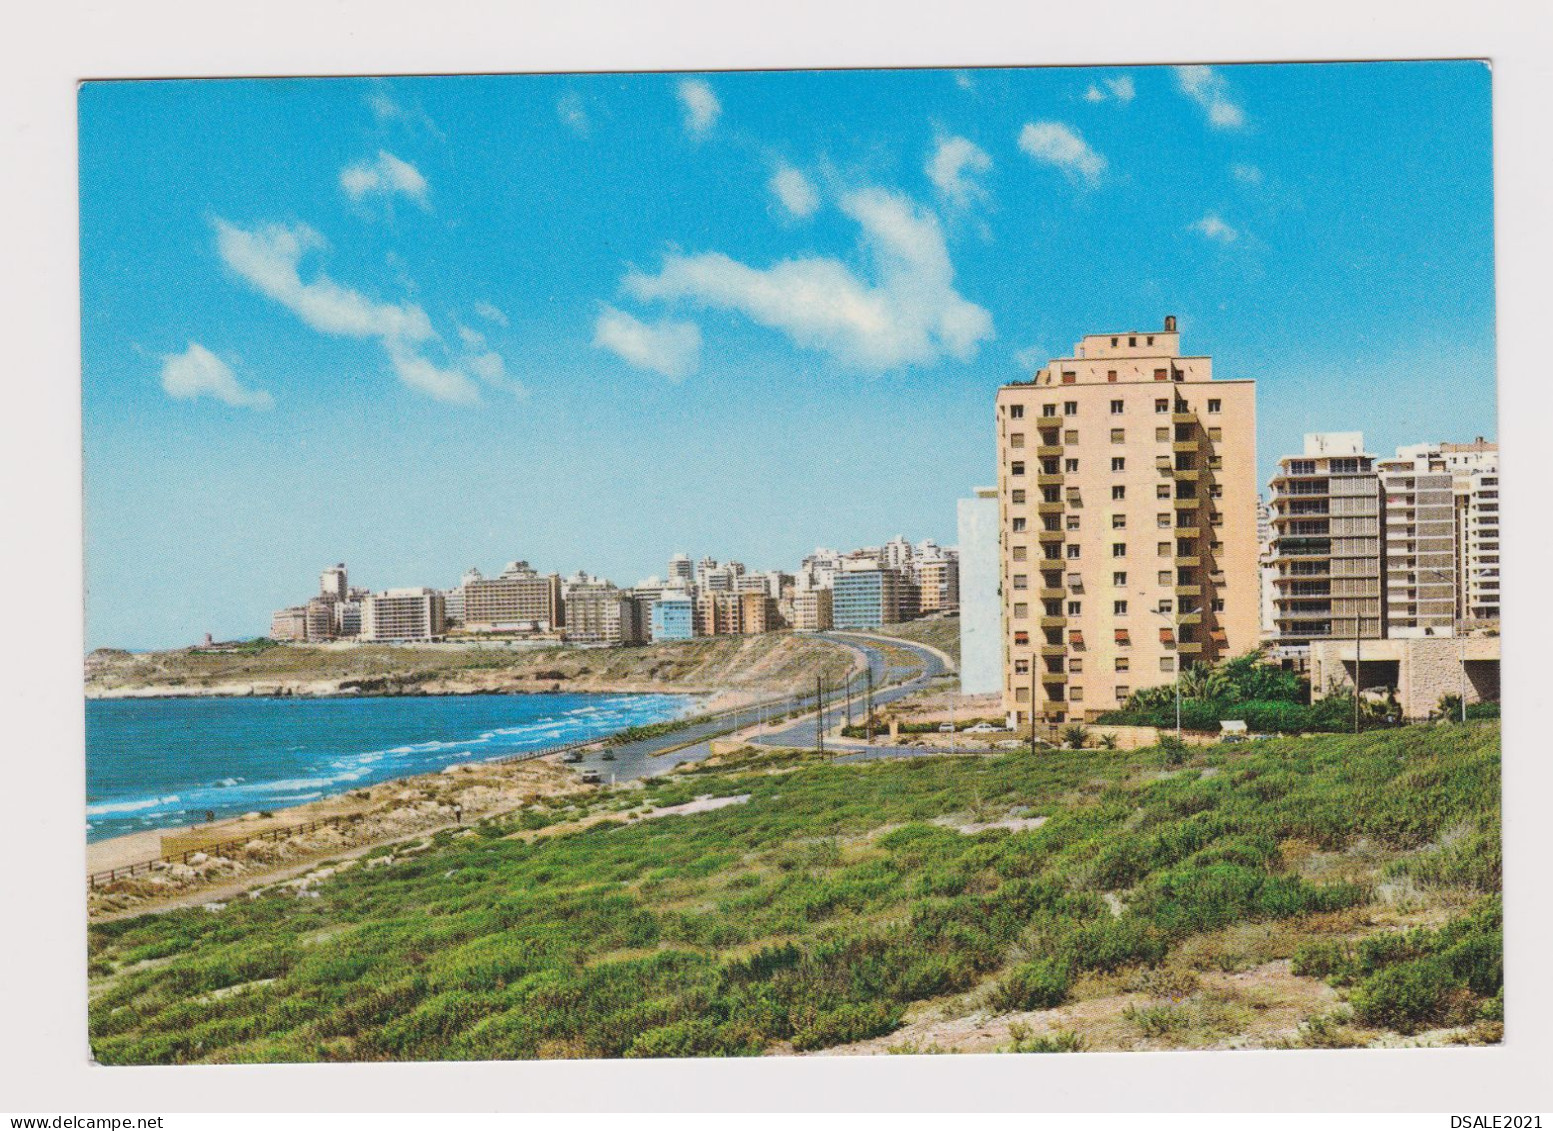 Lebanon Liban Raouche Quarter, New Buildings, View Vintage Photo Postcard RPPc AK (1295) - Lebanon